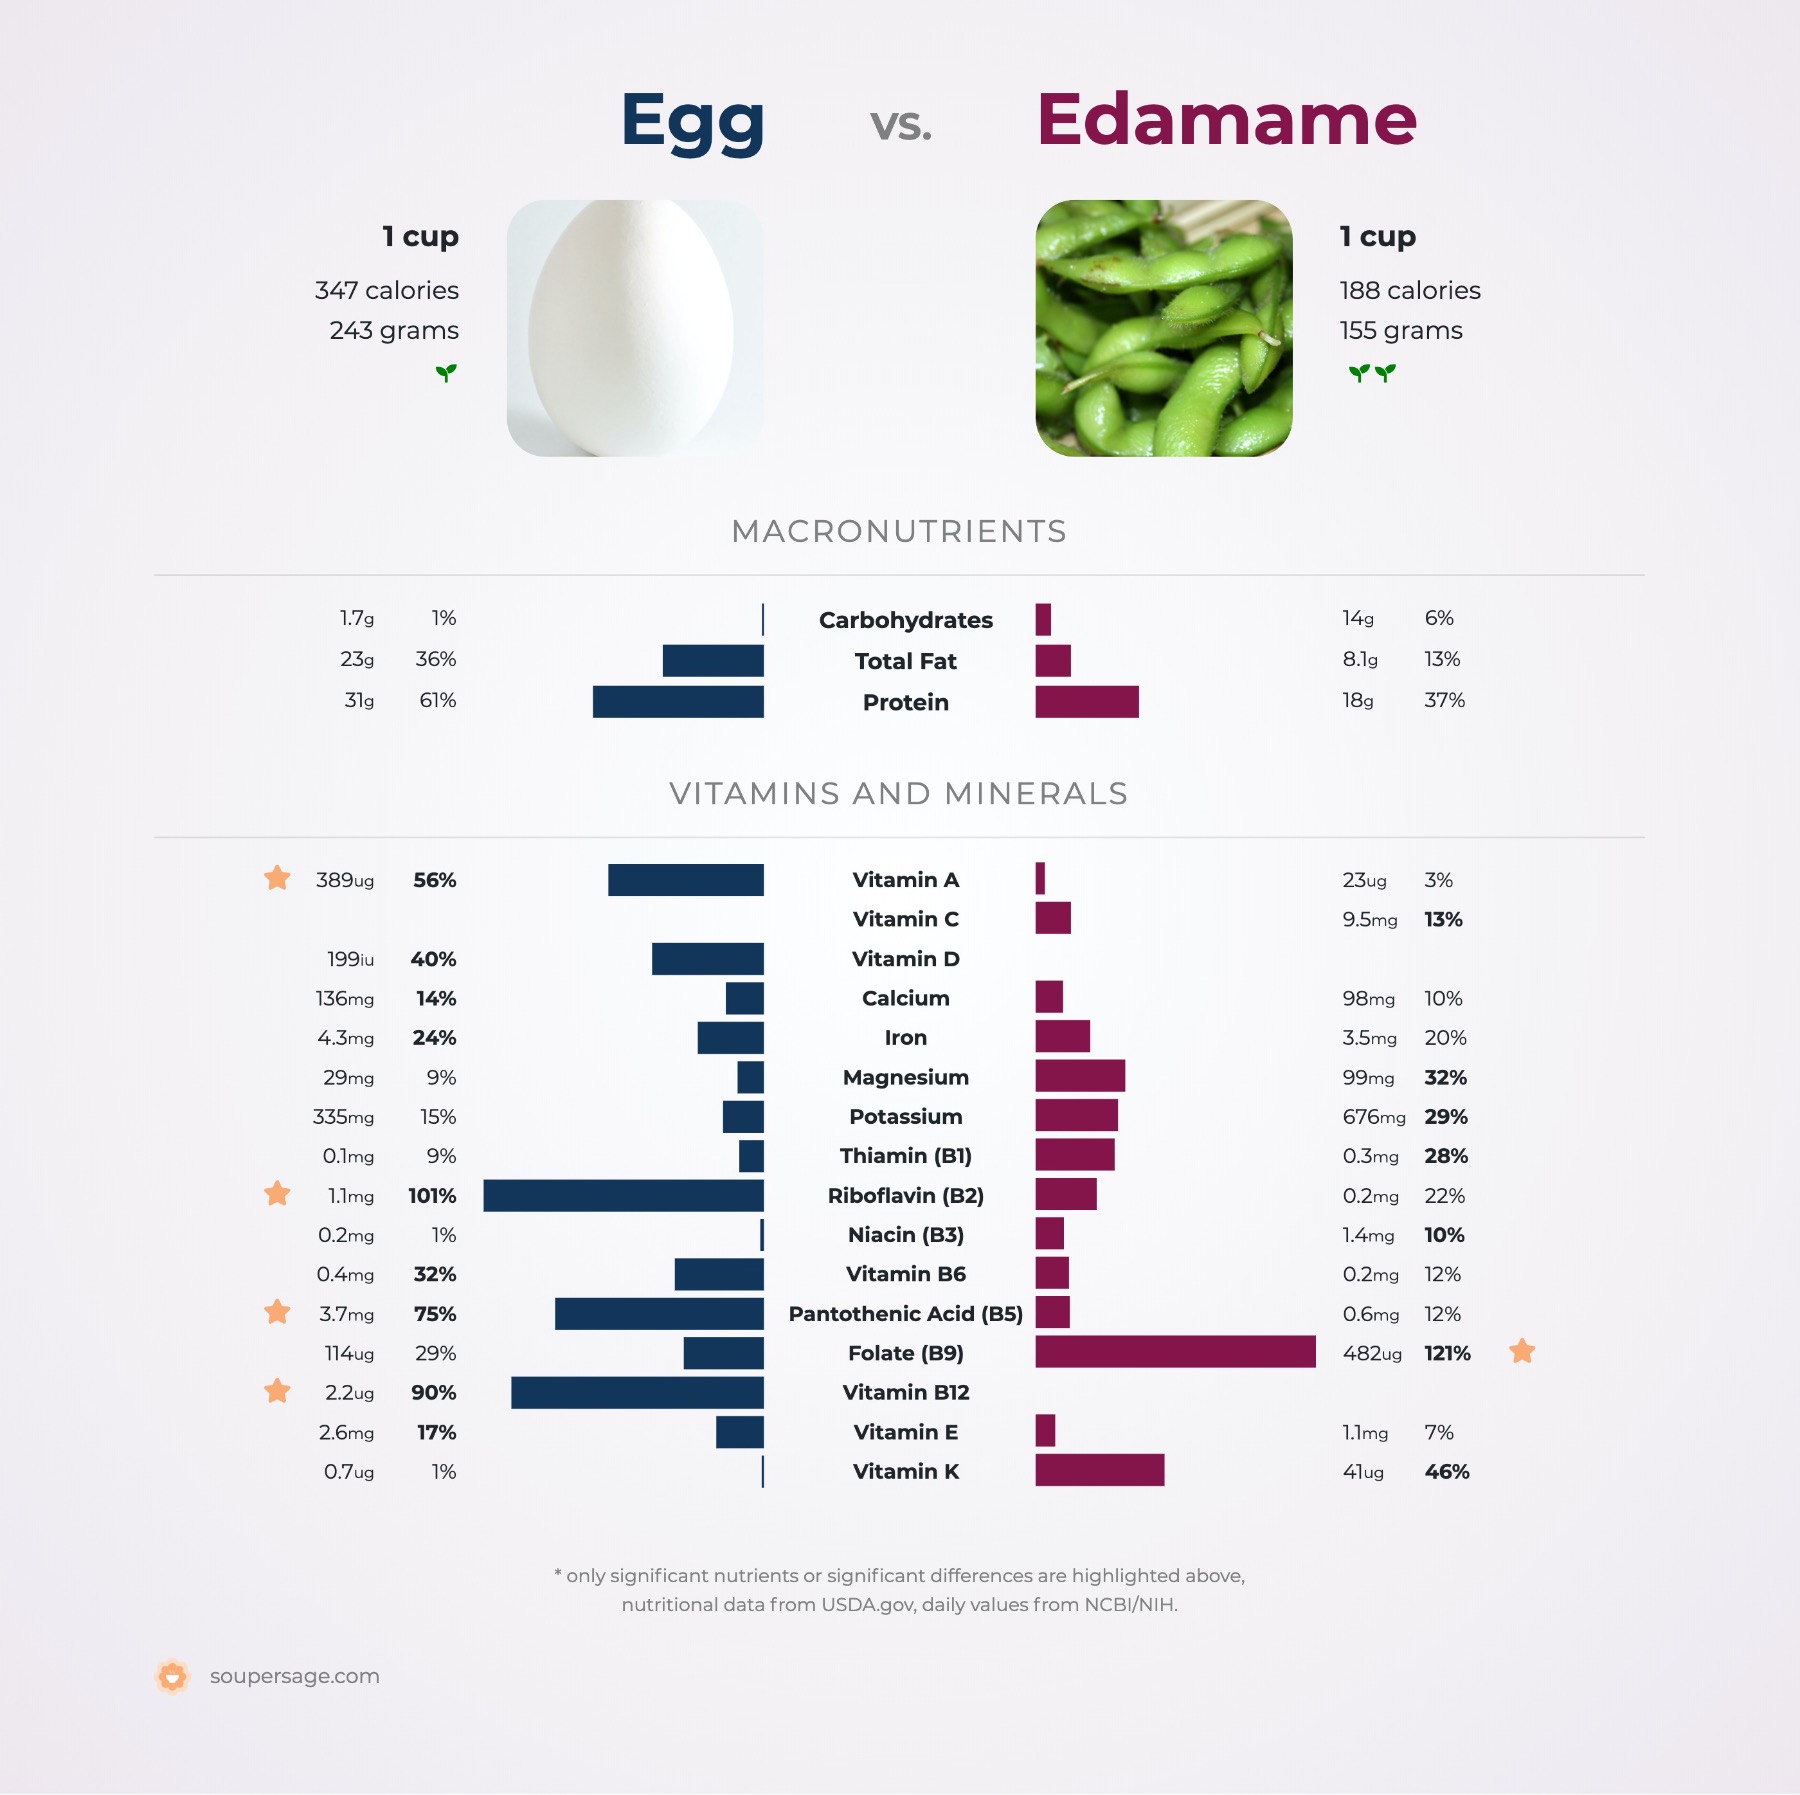 nutrition comparison of egg vs. edamame